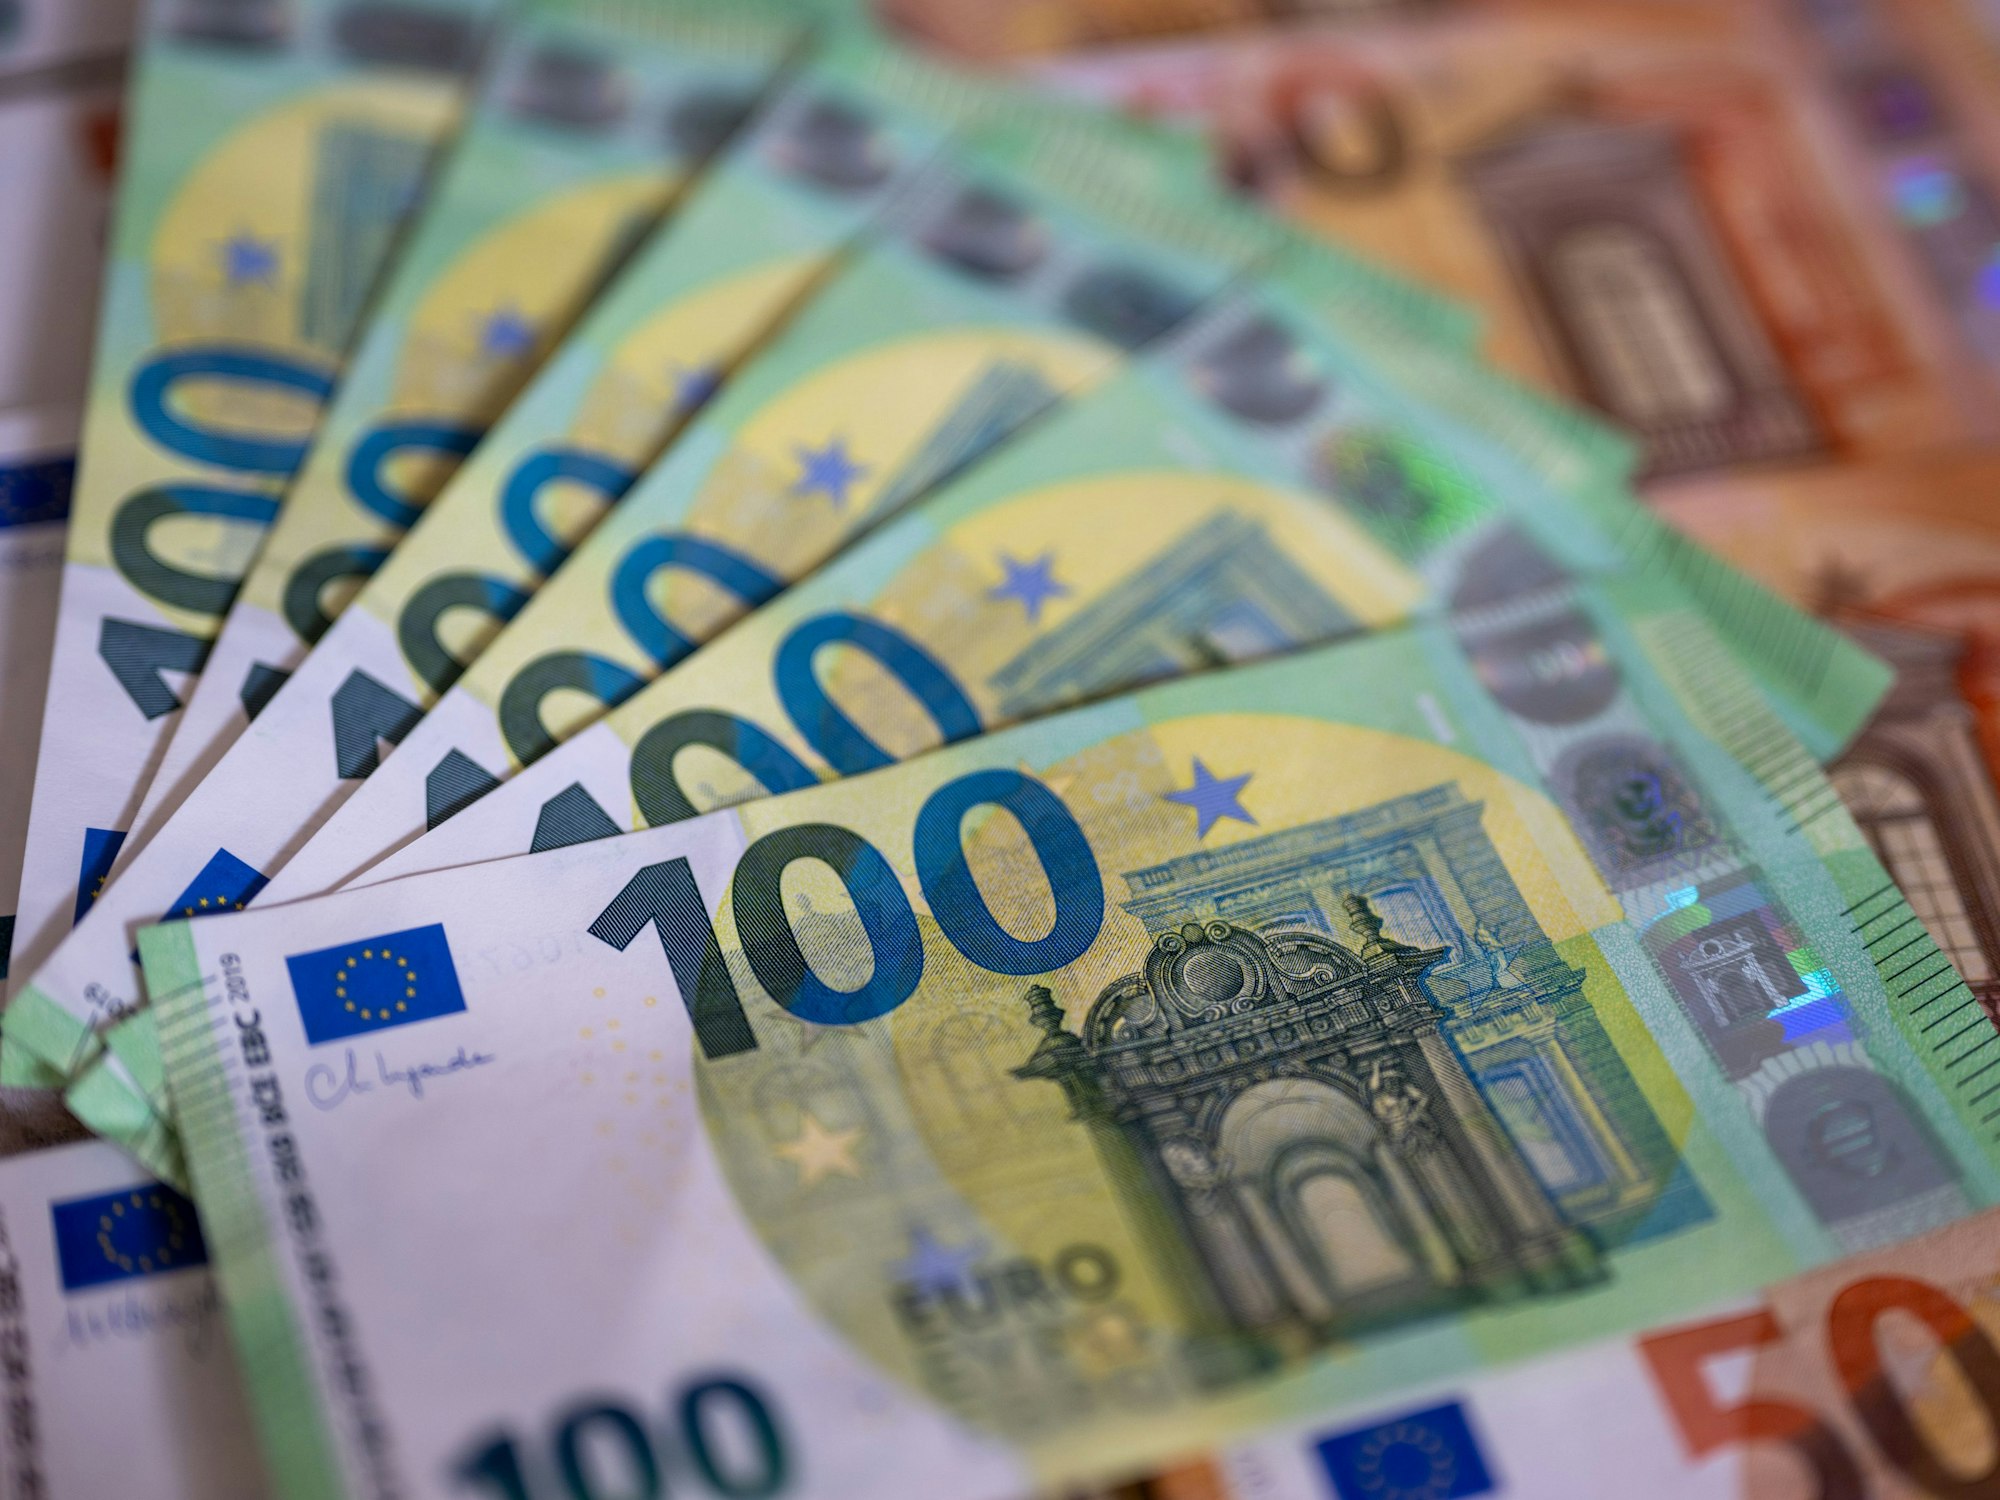 Sechs Hundert-Euro Scheine liegen übereinander.